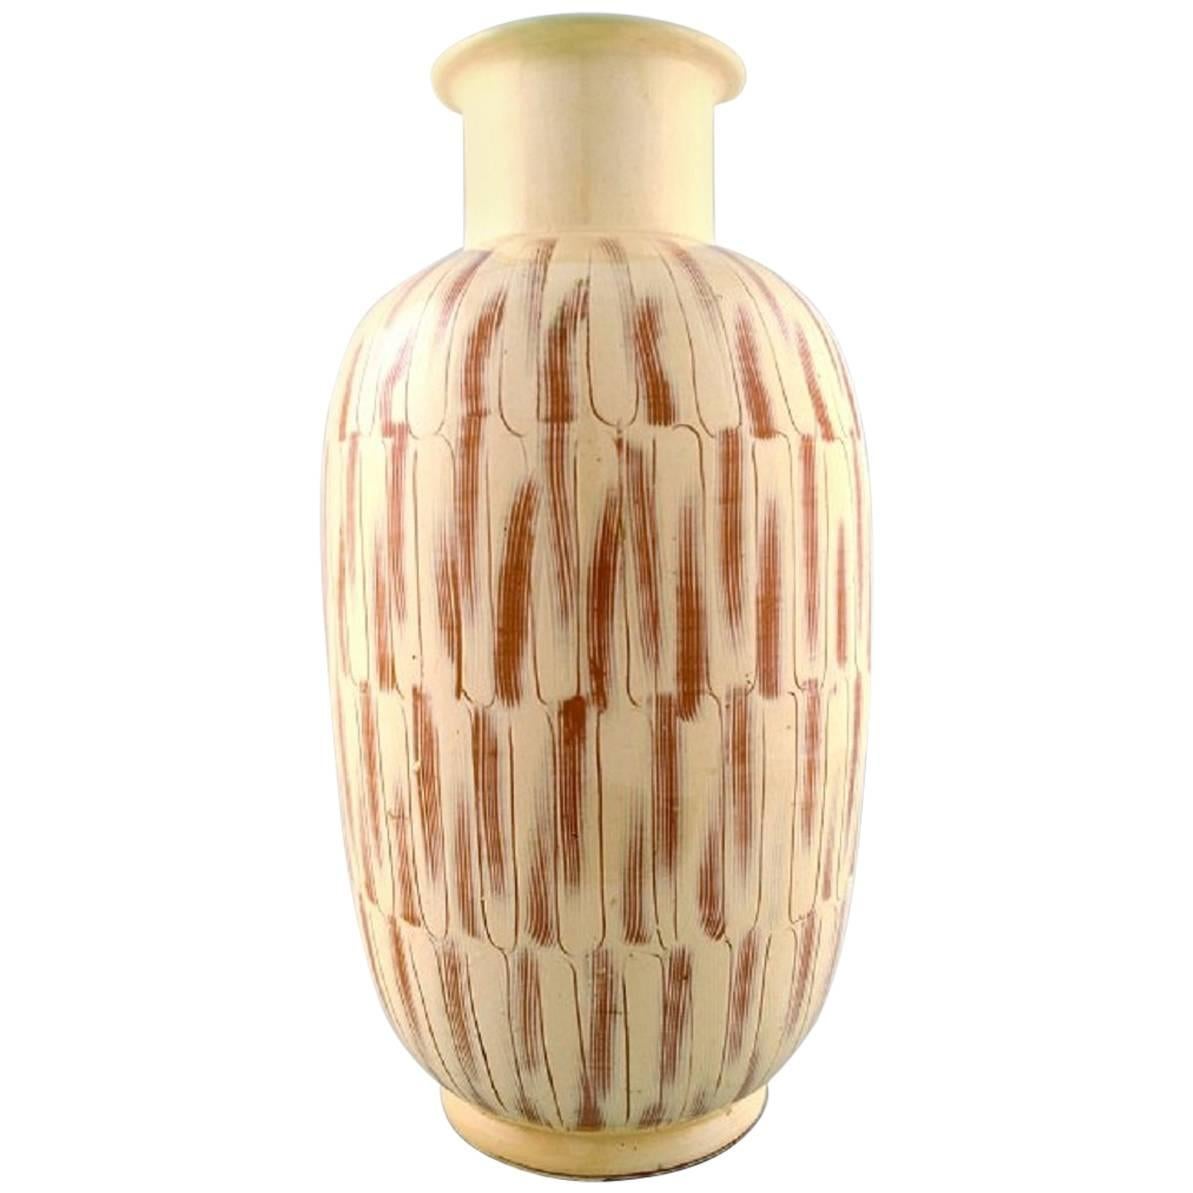 Kähler, Denmark, Large Glazed Stoneware Floor Vase in Modern Design